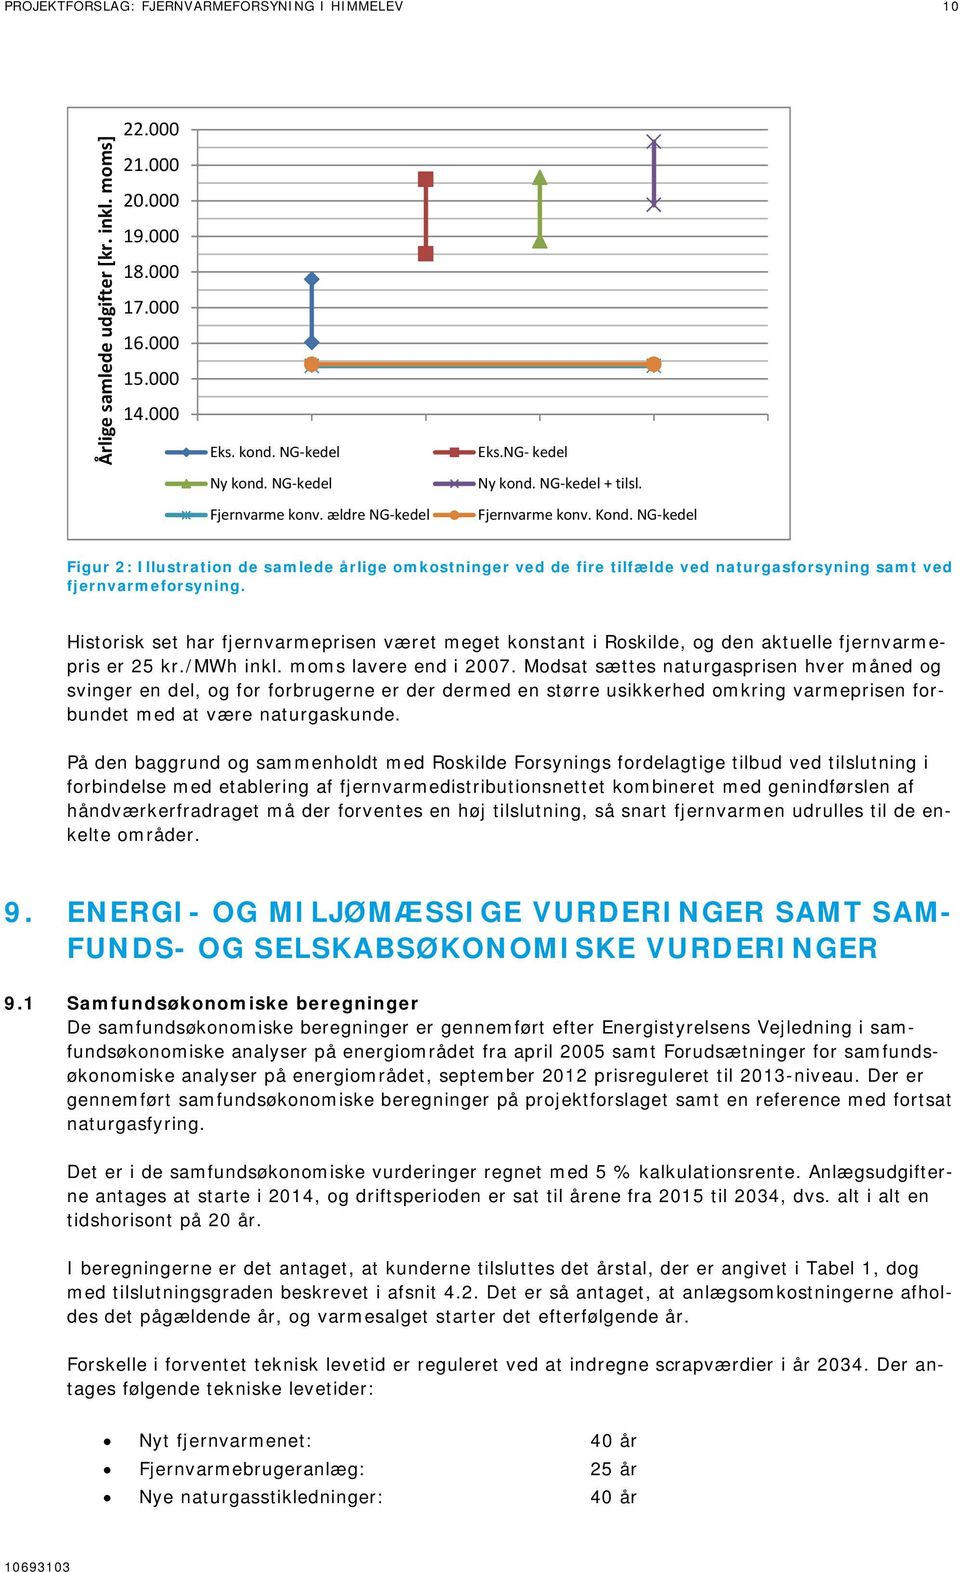 Historisk set har fjernvarmeprisen været meget konstant i Roskilde, og den aktuelle fjernvarmepris er 25 kr./mwh inkl. moms lavere end i 2007.